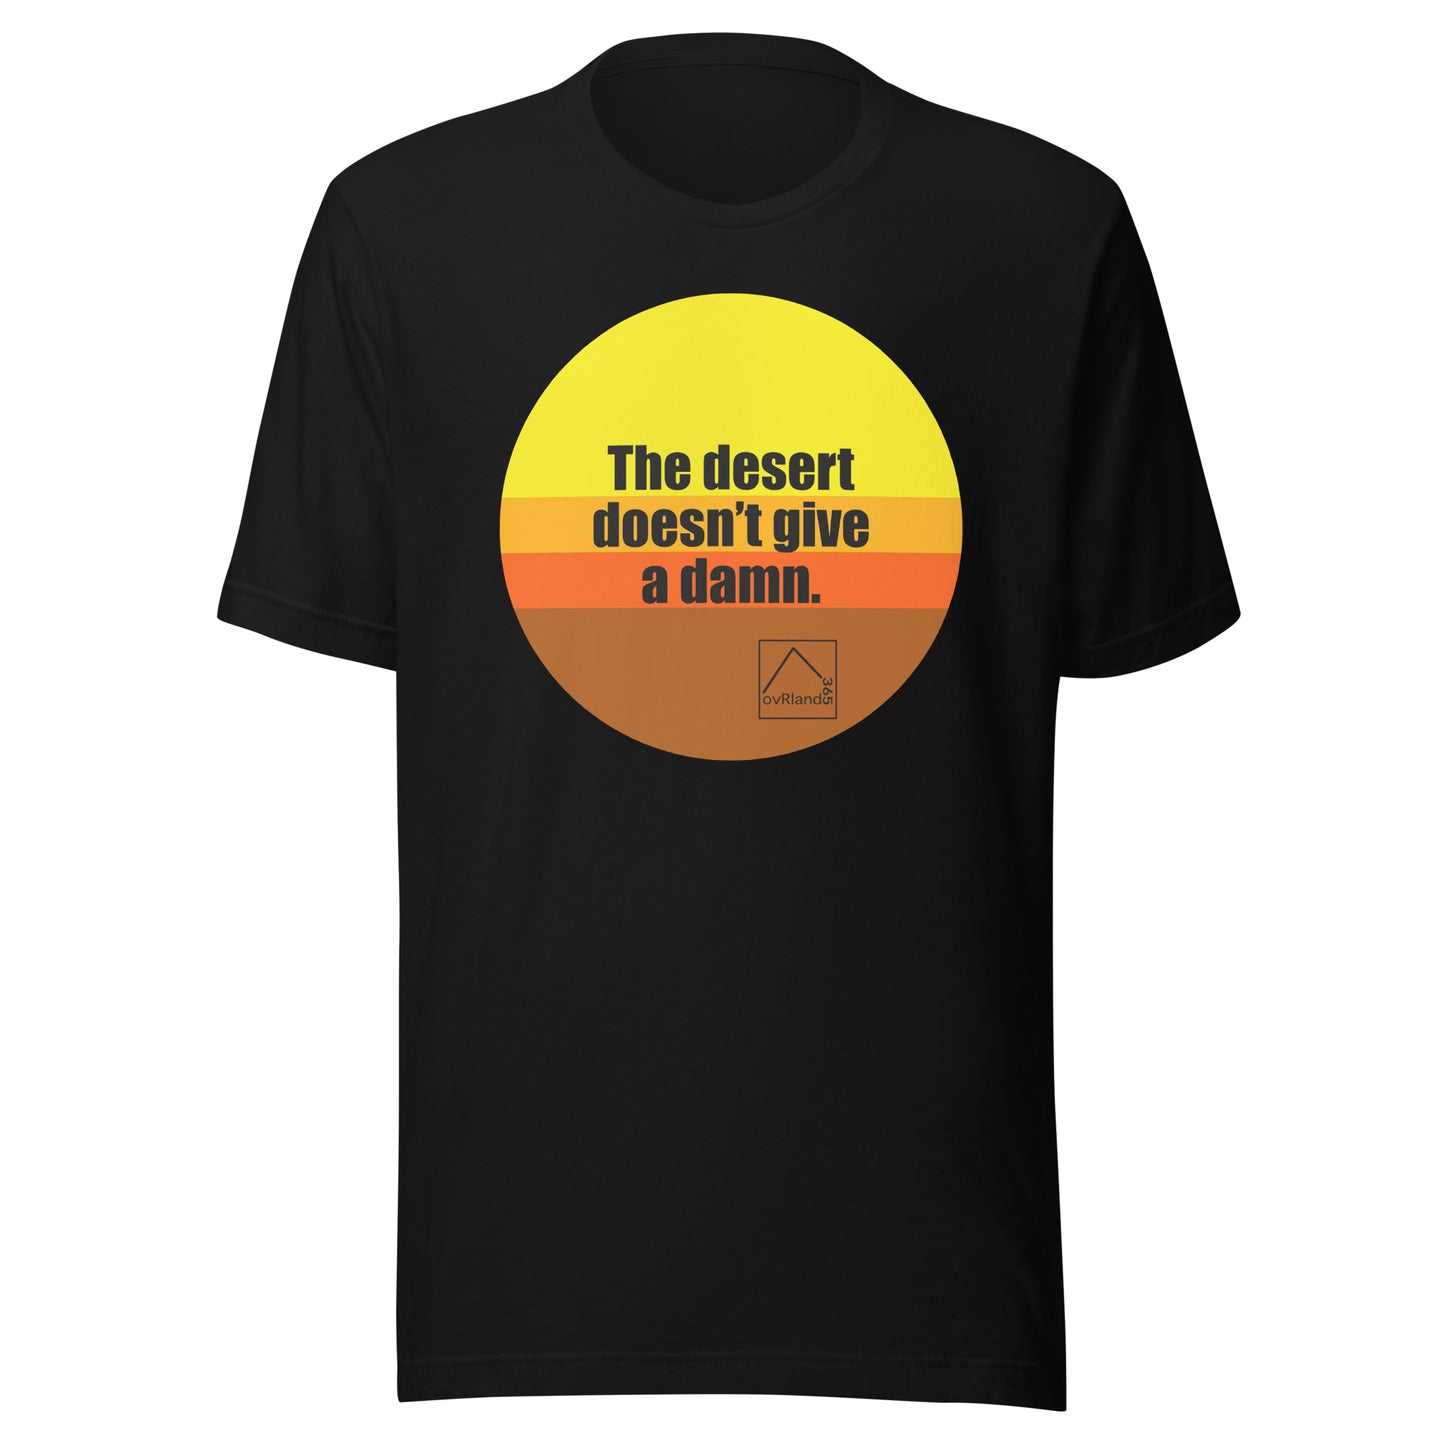 The desert doesn't give a damn. Black t-shirt. overland365.com